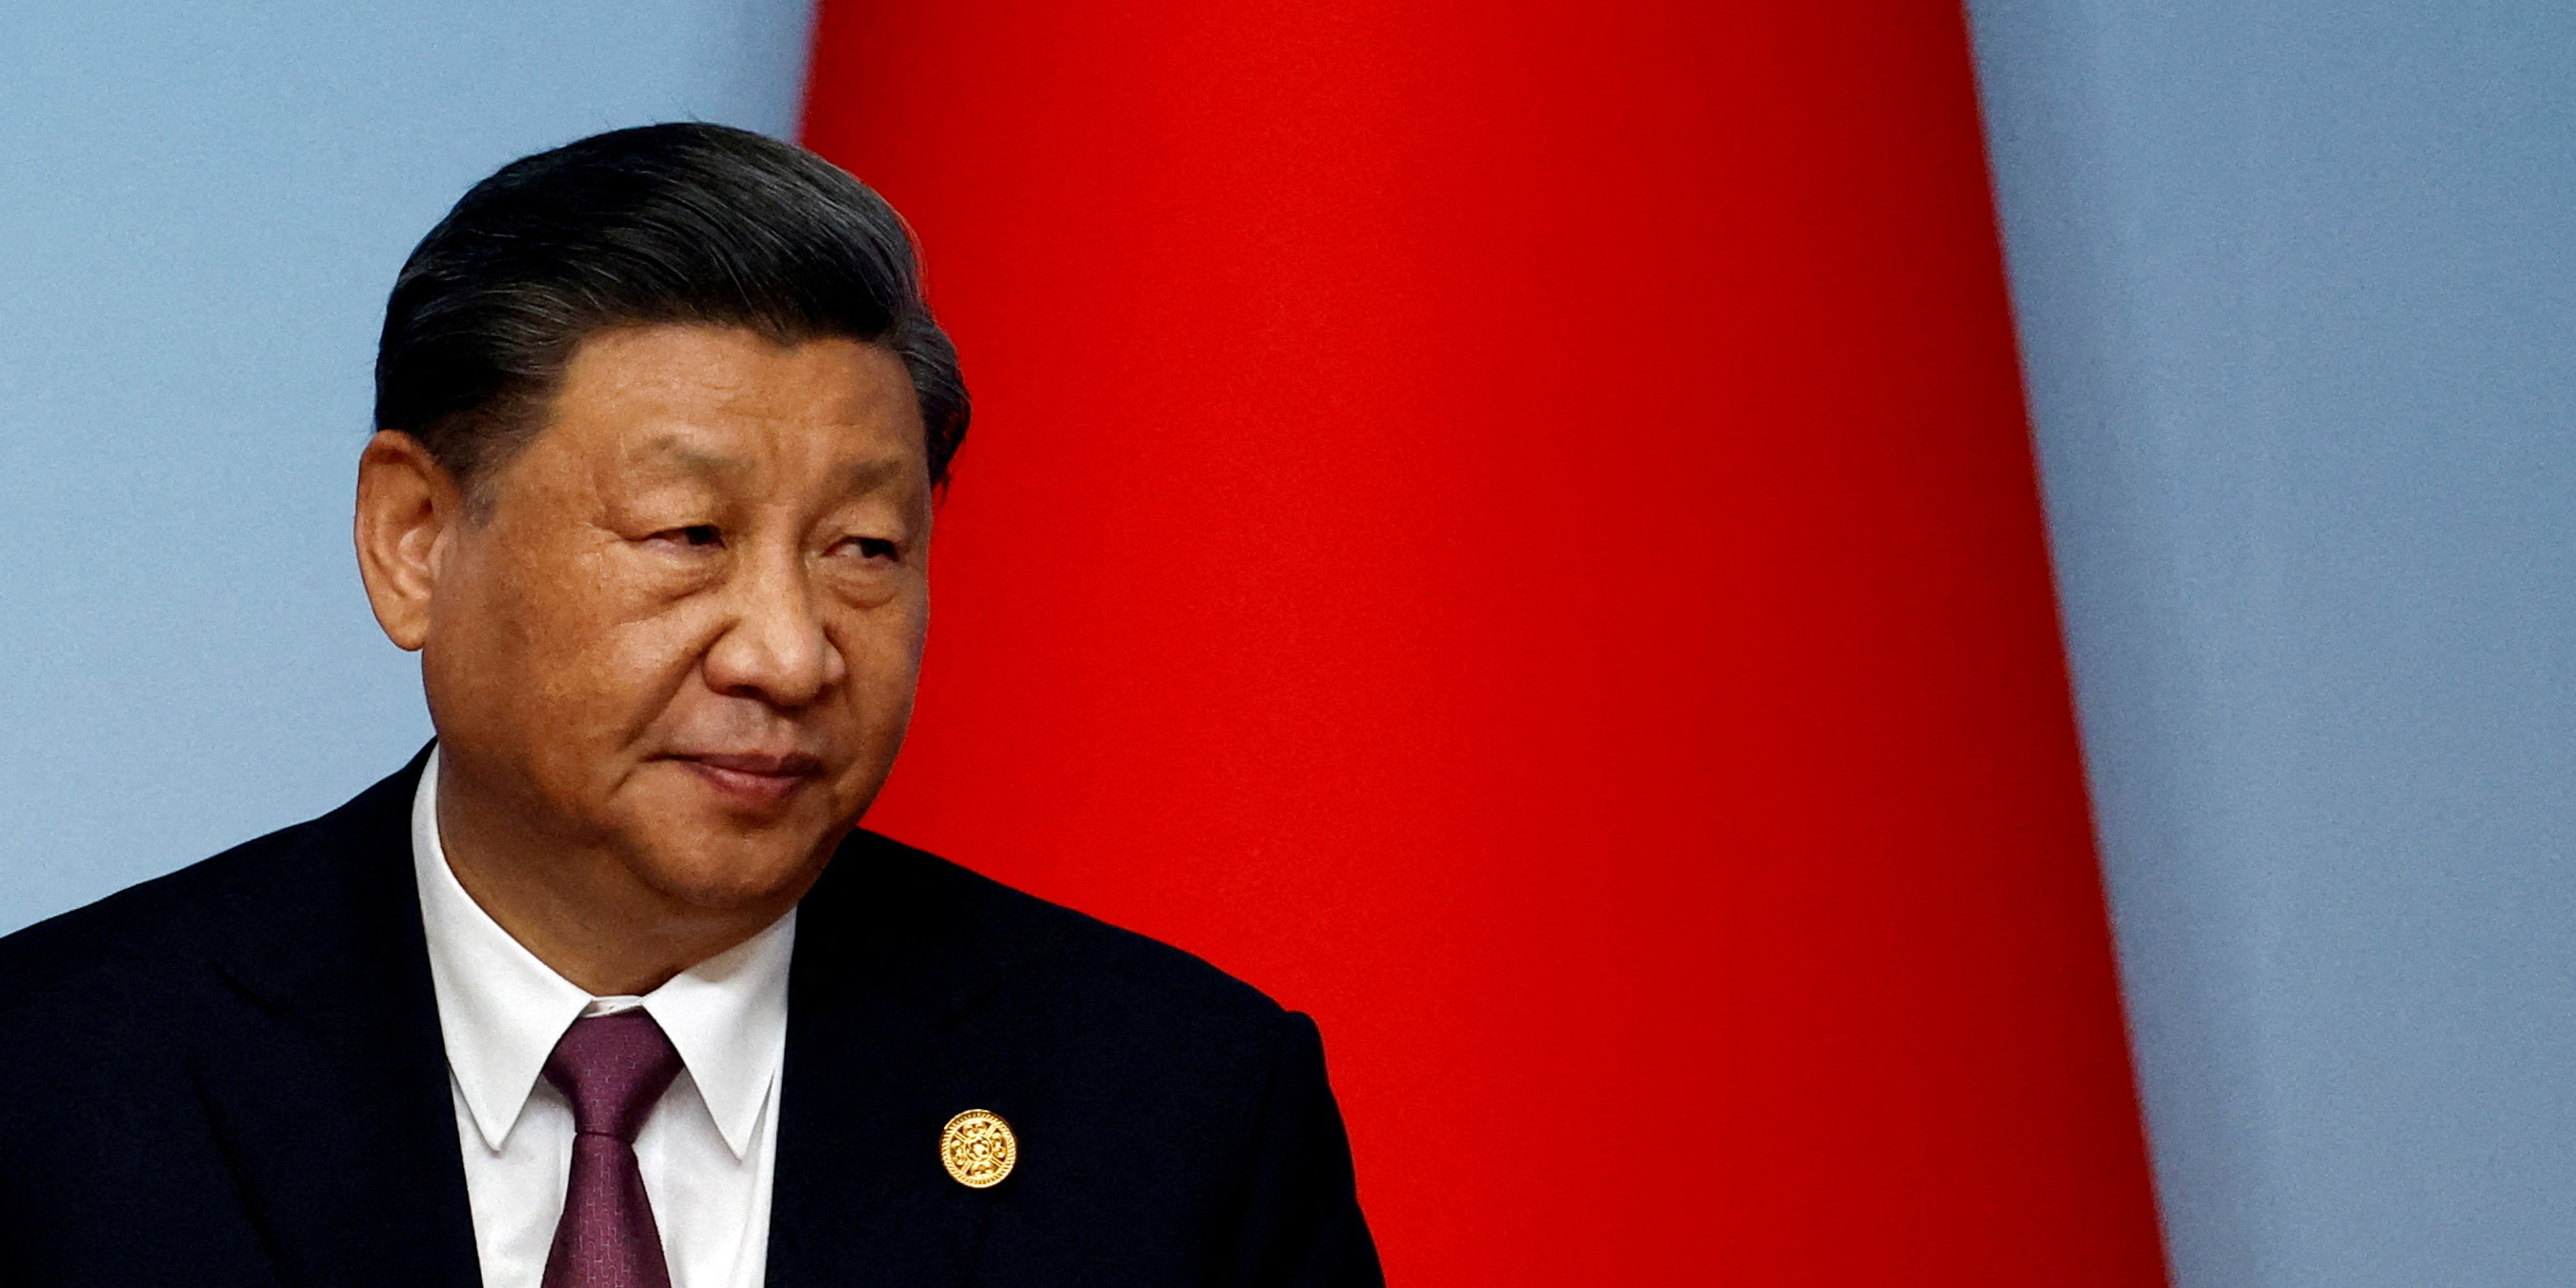 Energie : Xi Jinping renforce ses liens avec les pays arabes lors d'un forum organisé en Chine